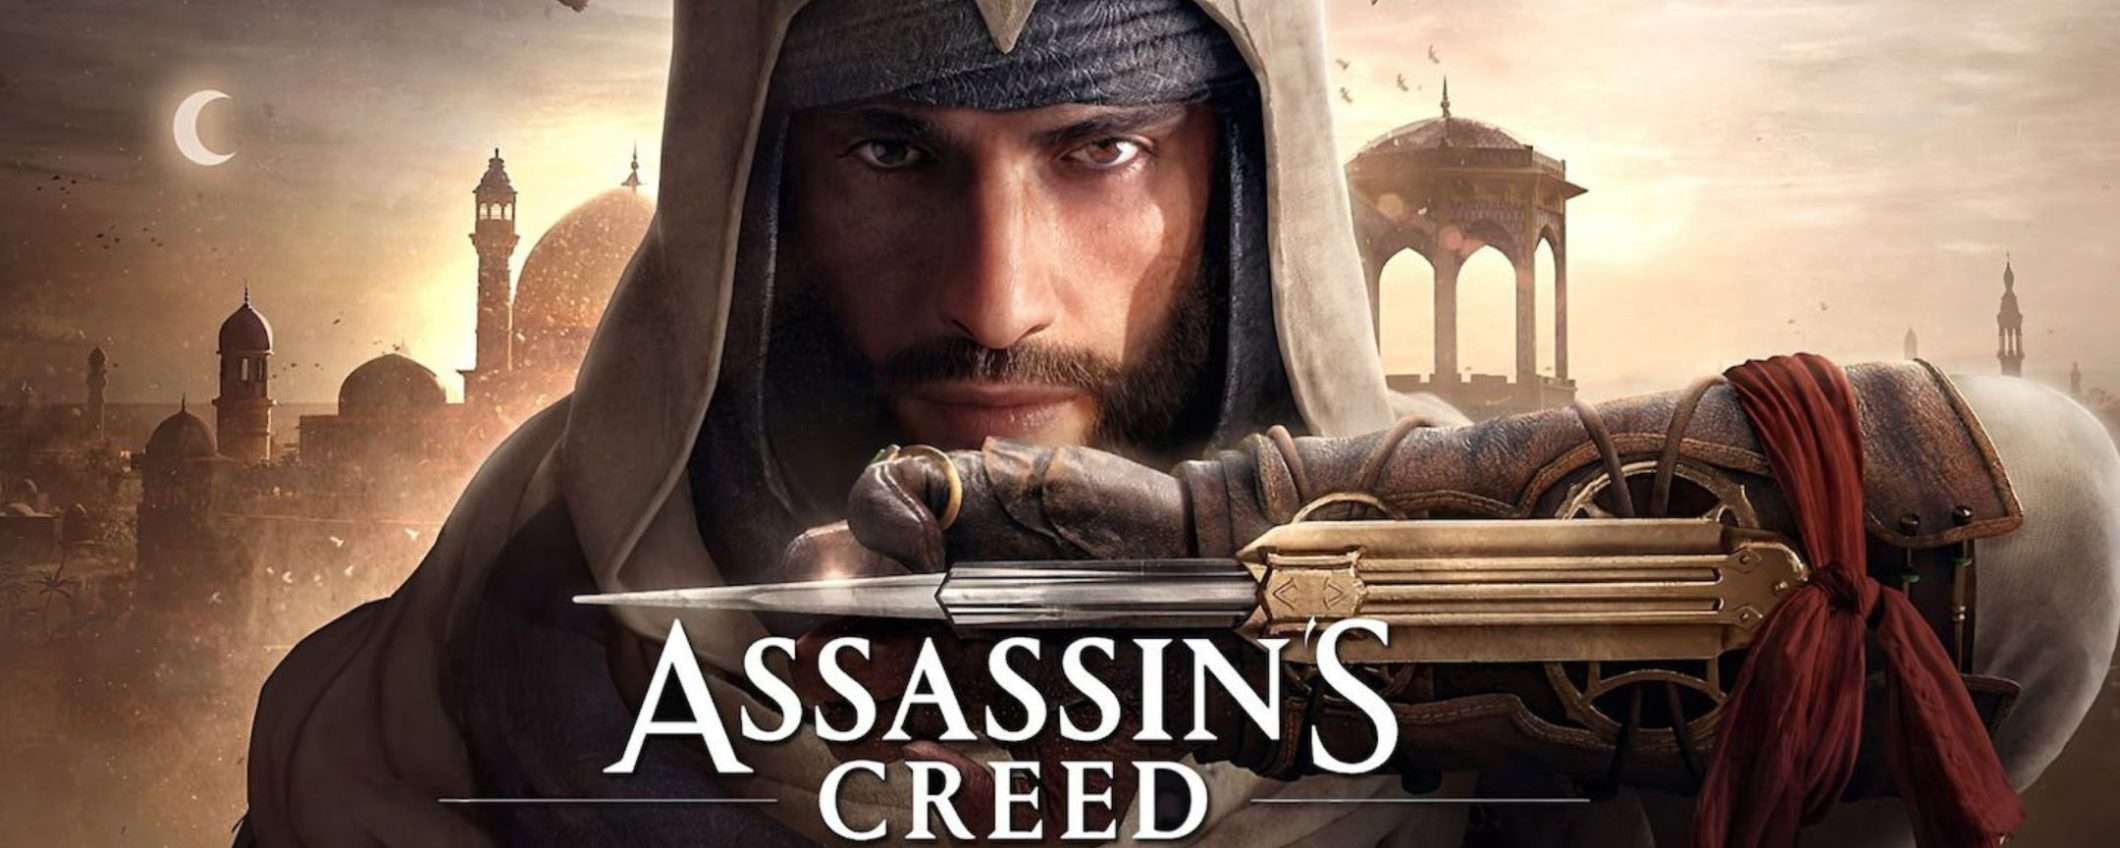 Assassin's Creed Mirage arriverà anche su iPhone e iPad